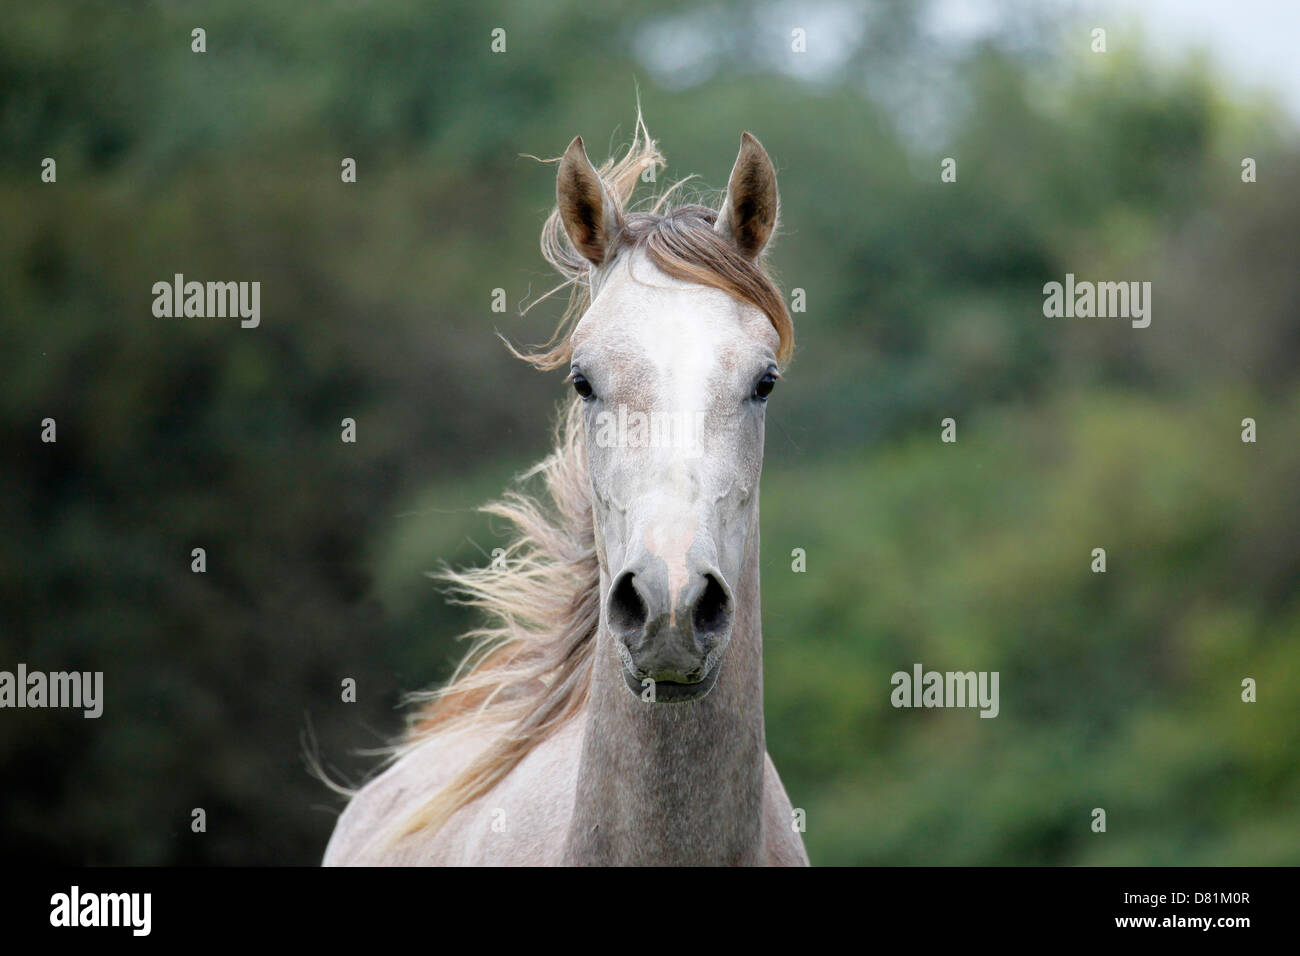 arabian horse portrait Stock Photo